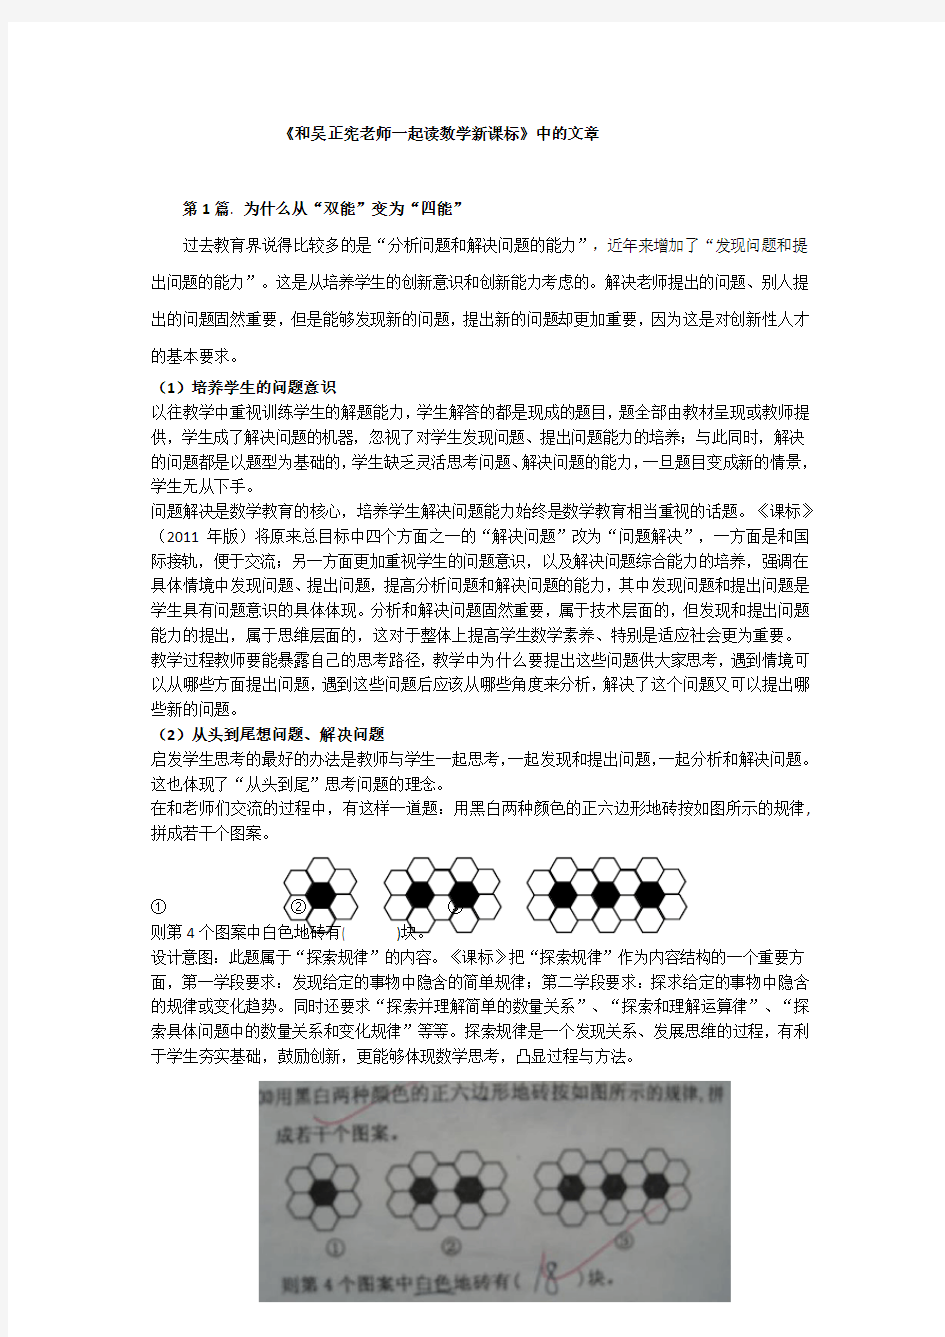 《和吴正宪老师一起读数学新课标》中的文章